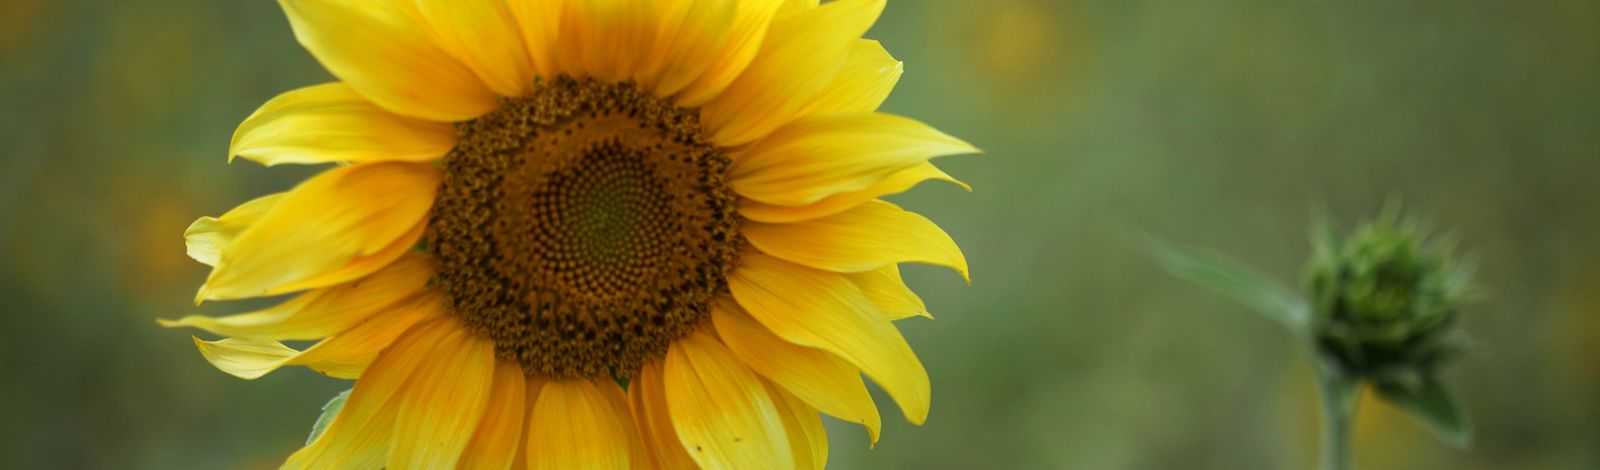 A single Kansas sunflower